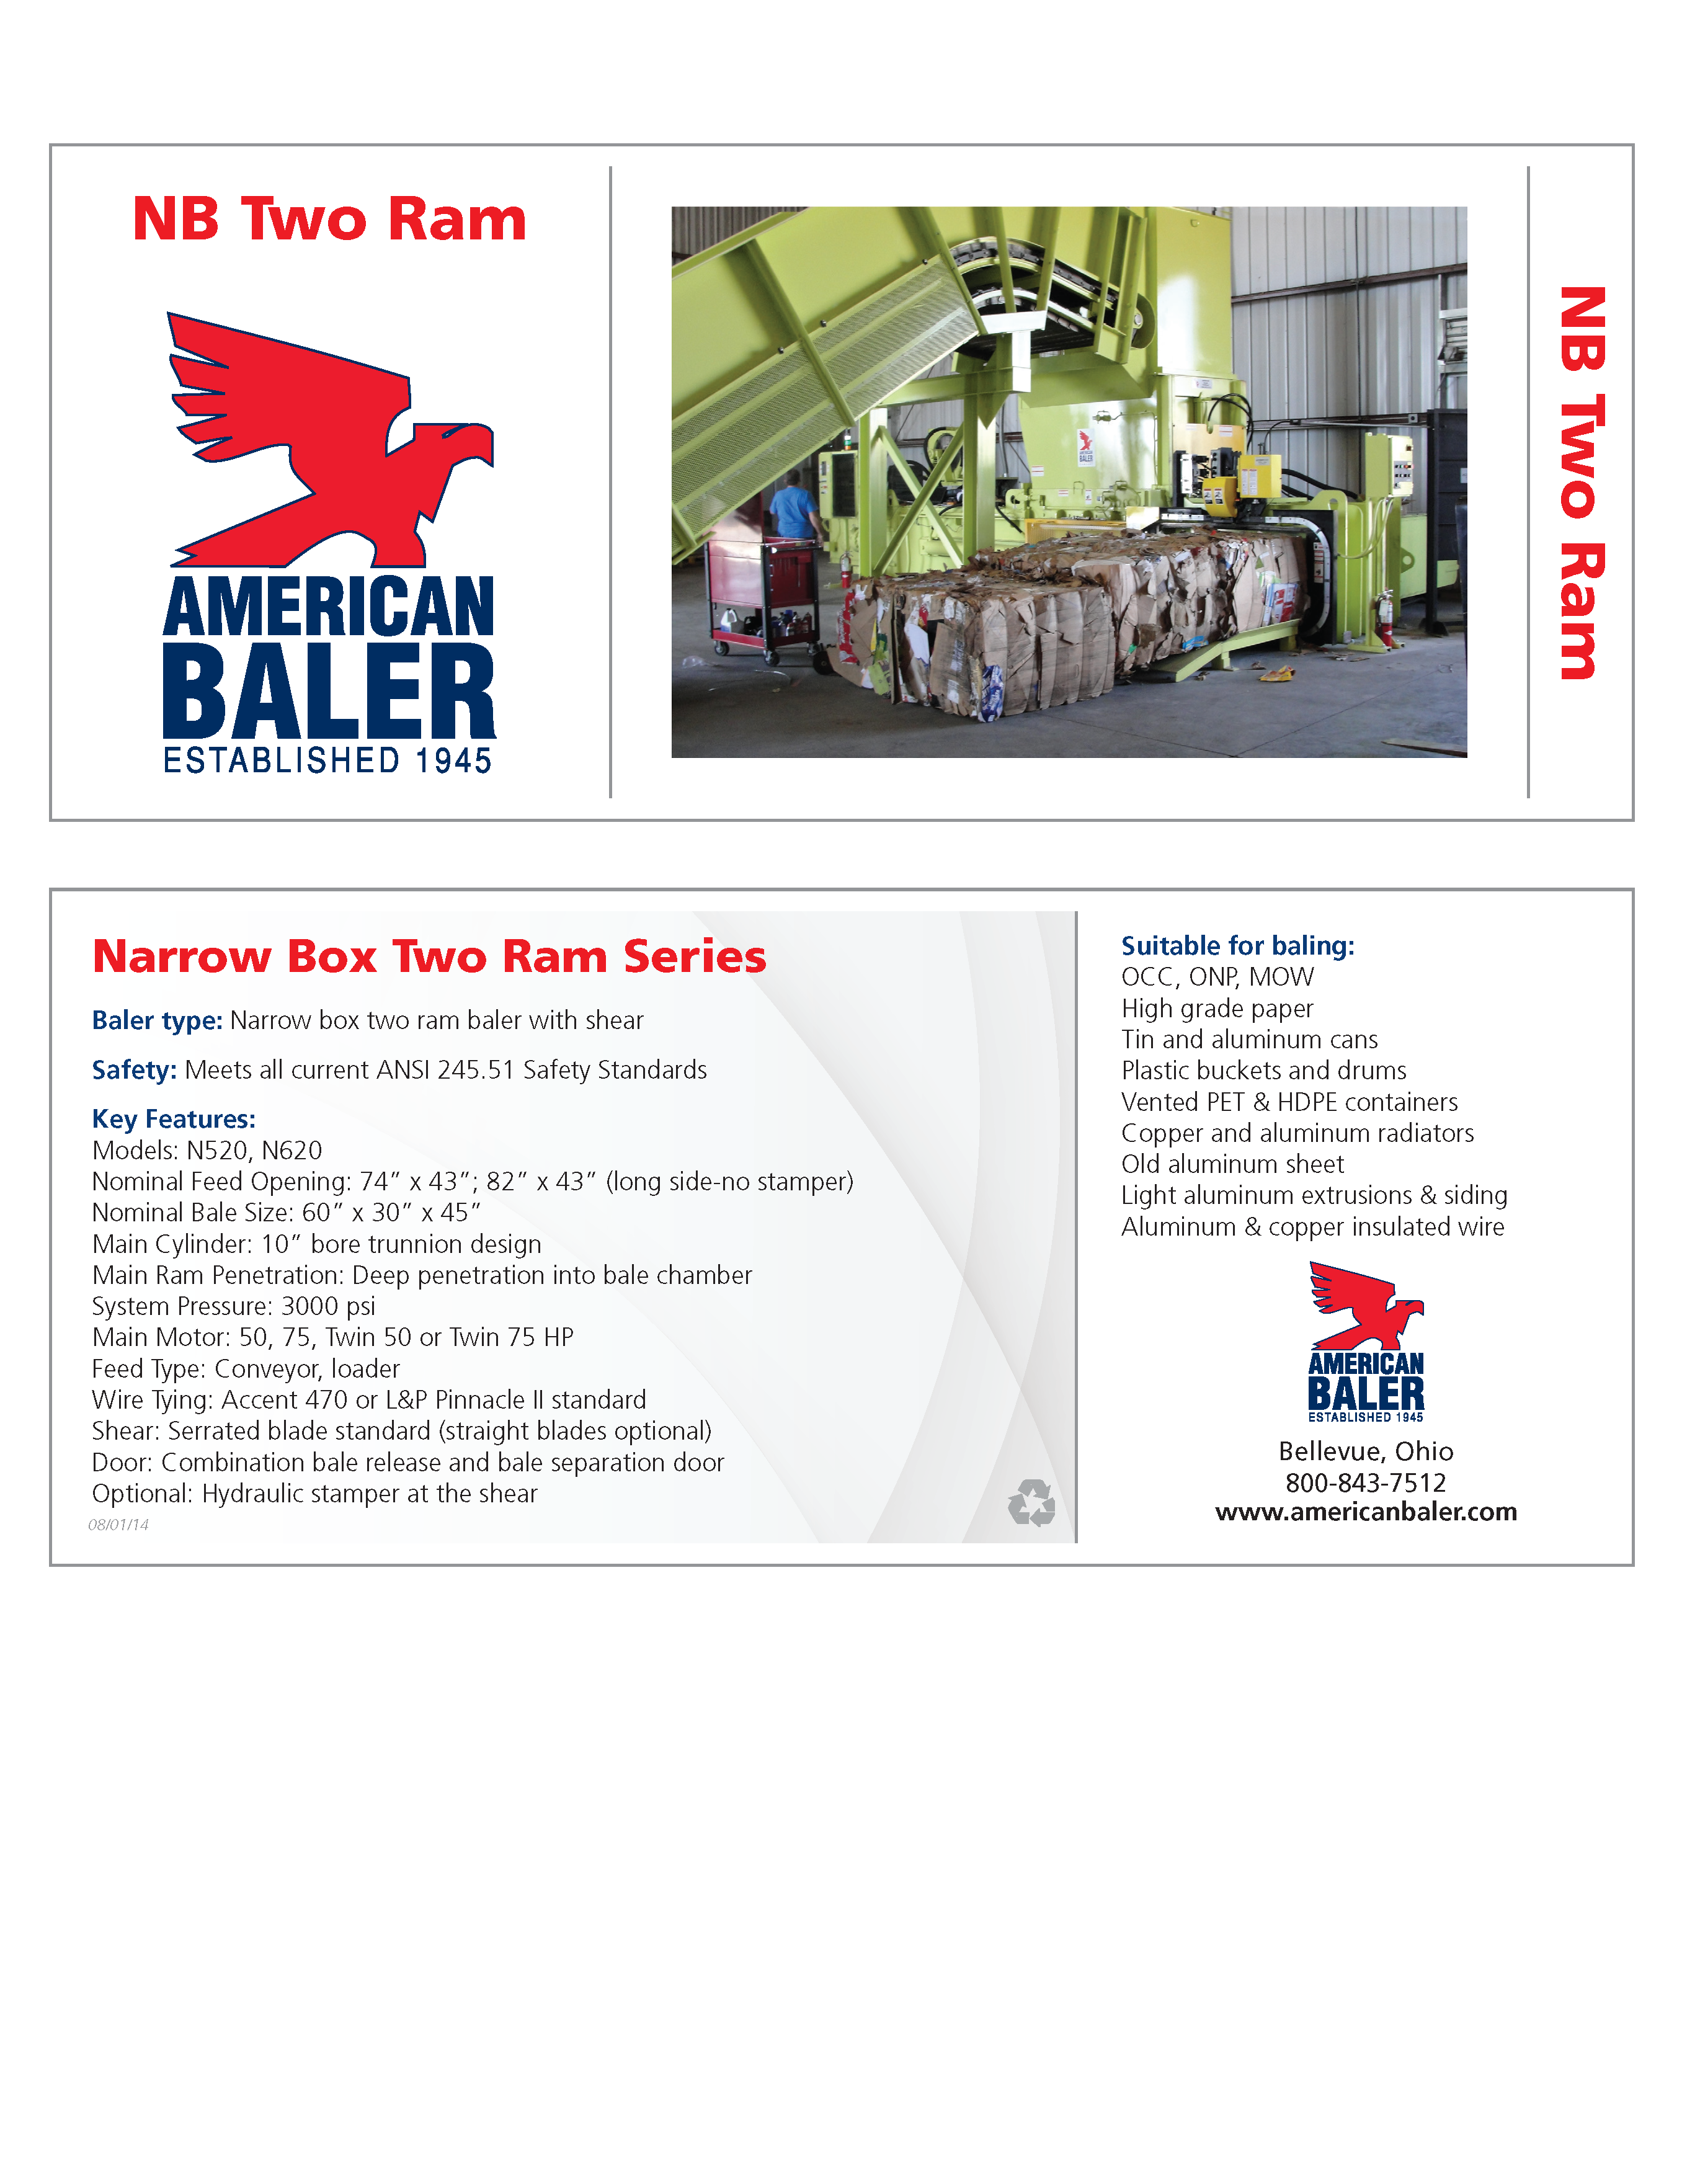 Conozca más acerca de la compactadora American Baler NB de Doble Pistón en el folleto.